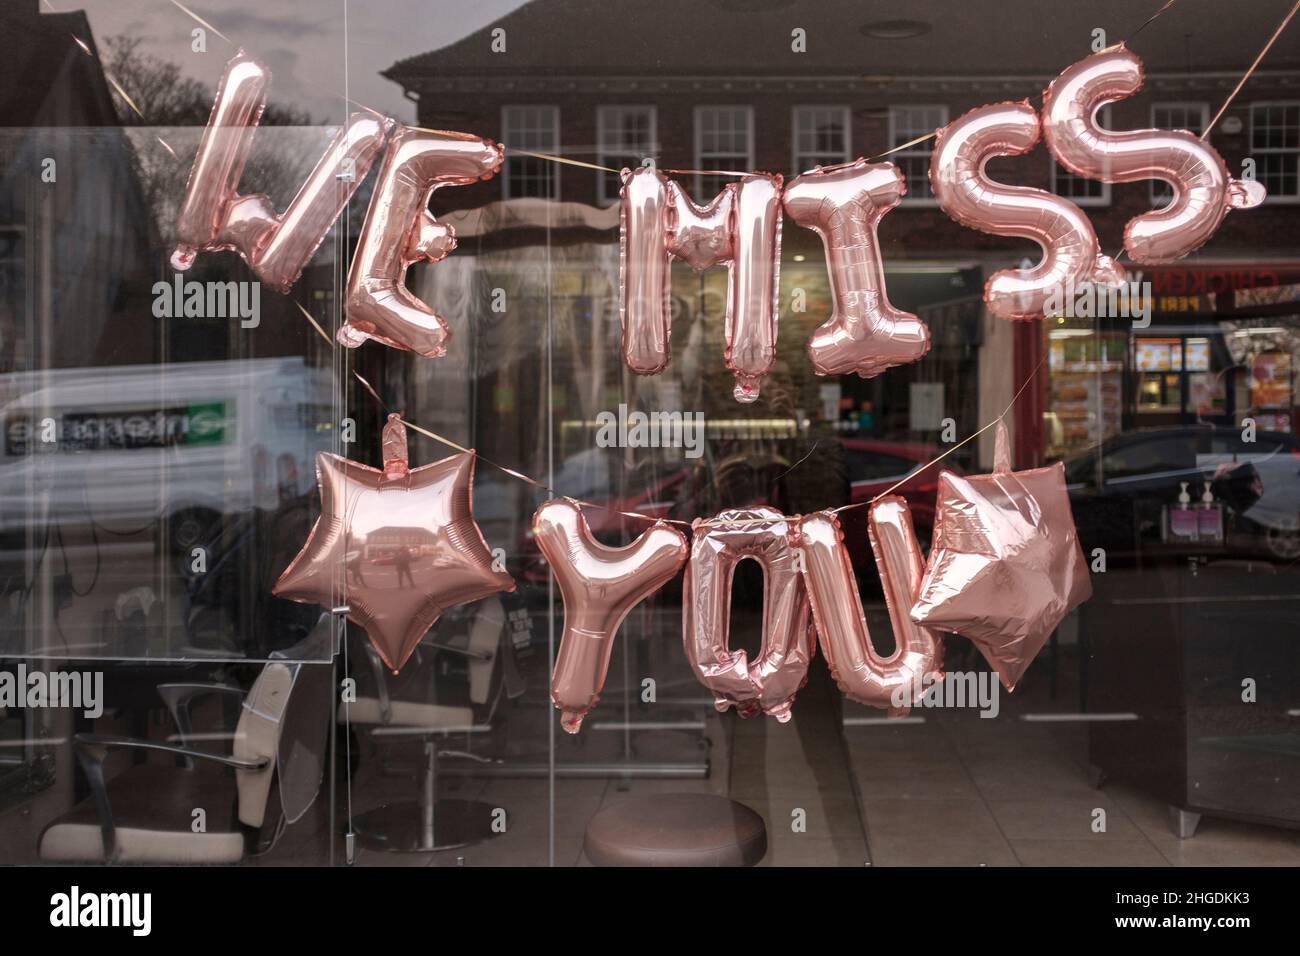 Il cartello Blow up recita 'we miss you' sul display del negozio durante il blocco Covid-19, Londra, Inghilterra Foto Stock